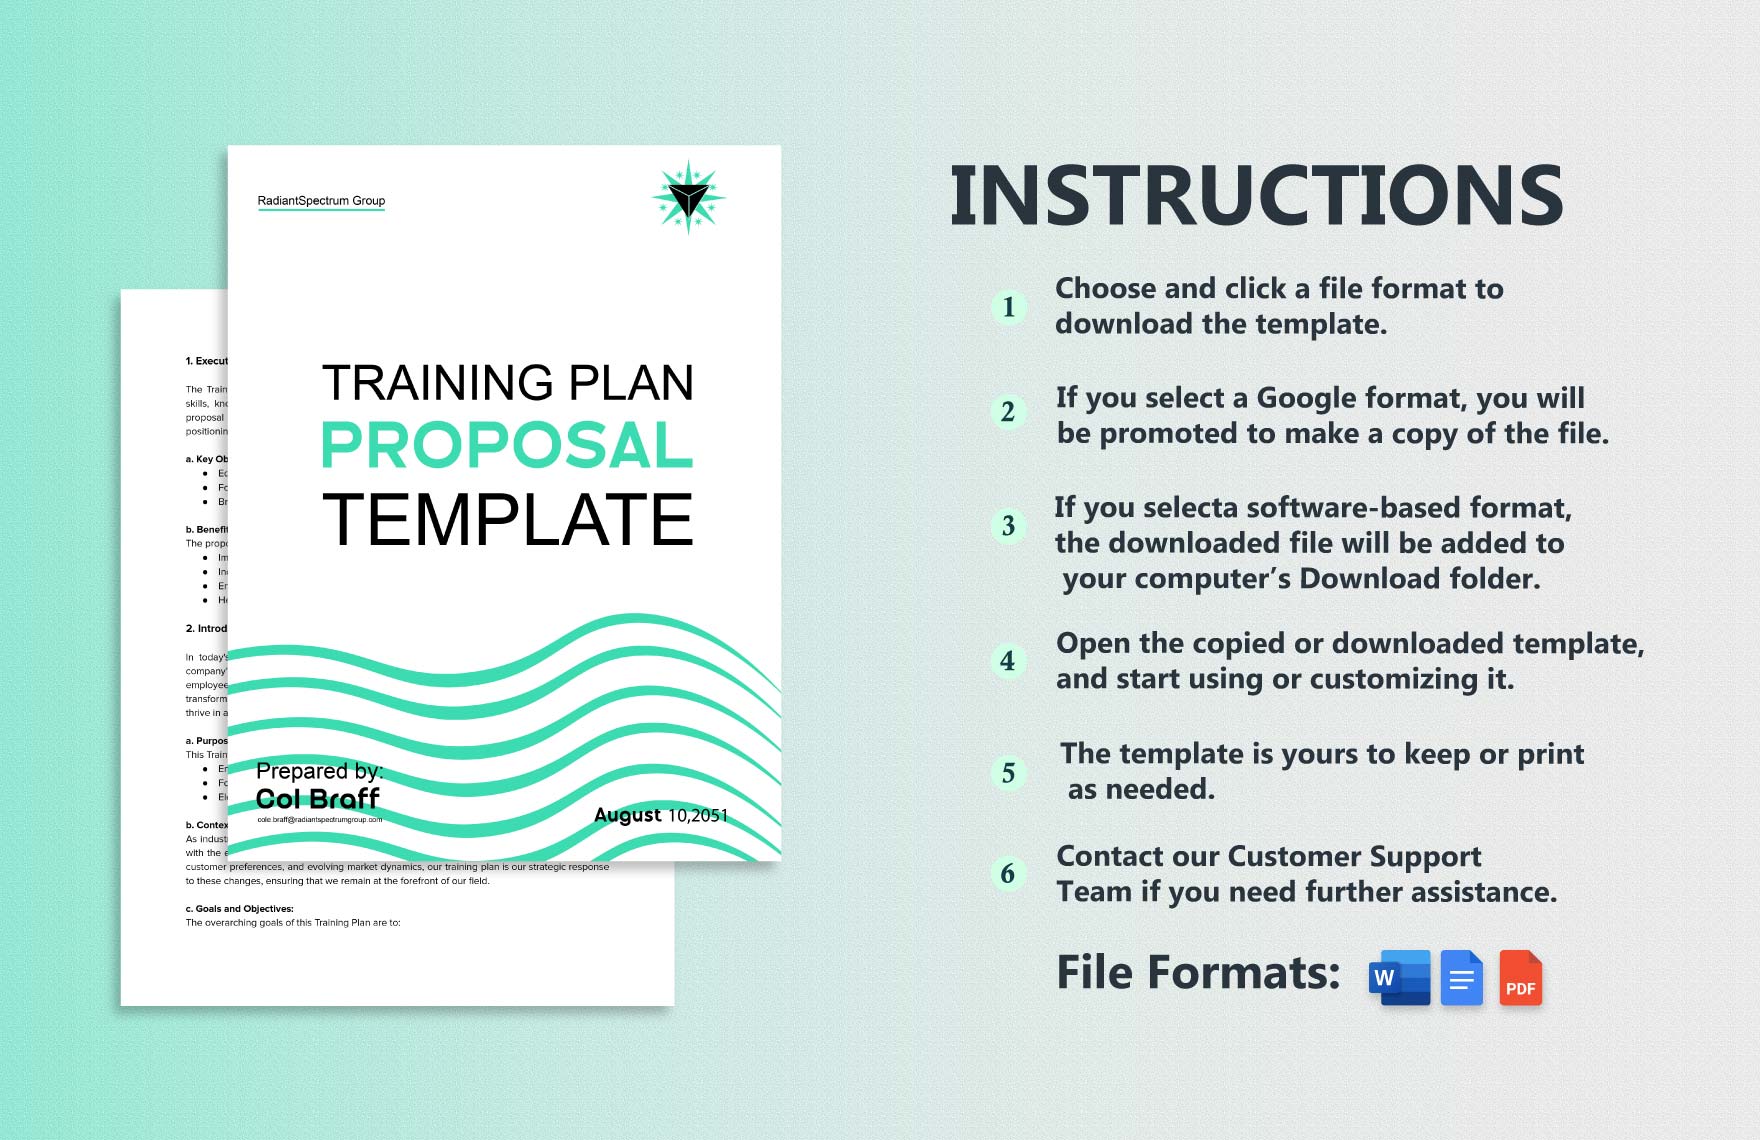 Training Plan Proposal Template